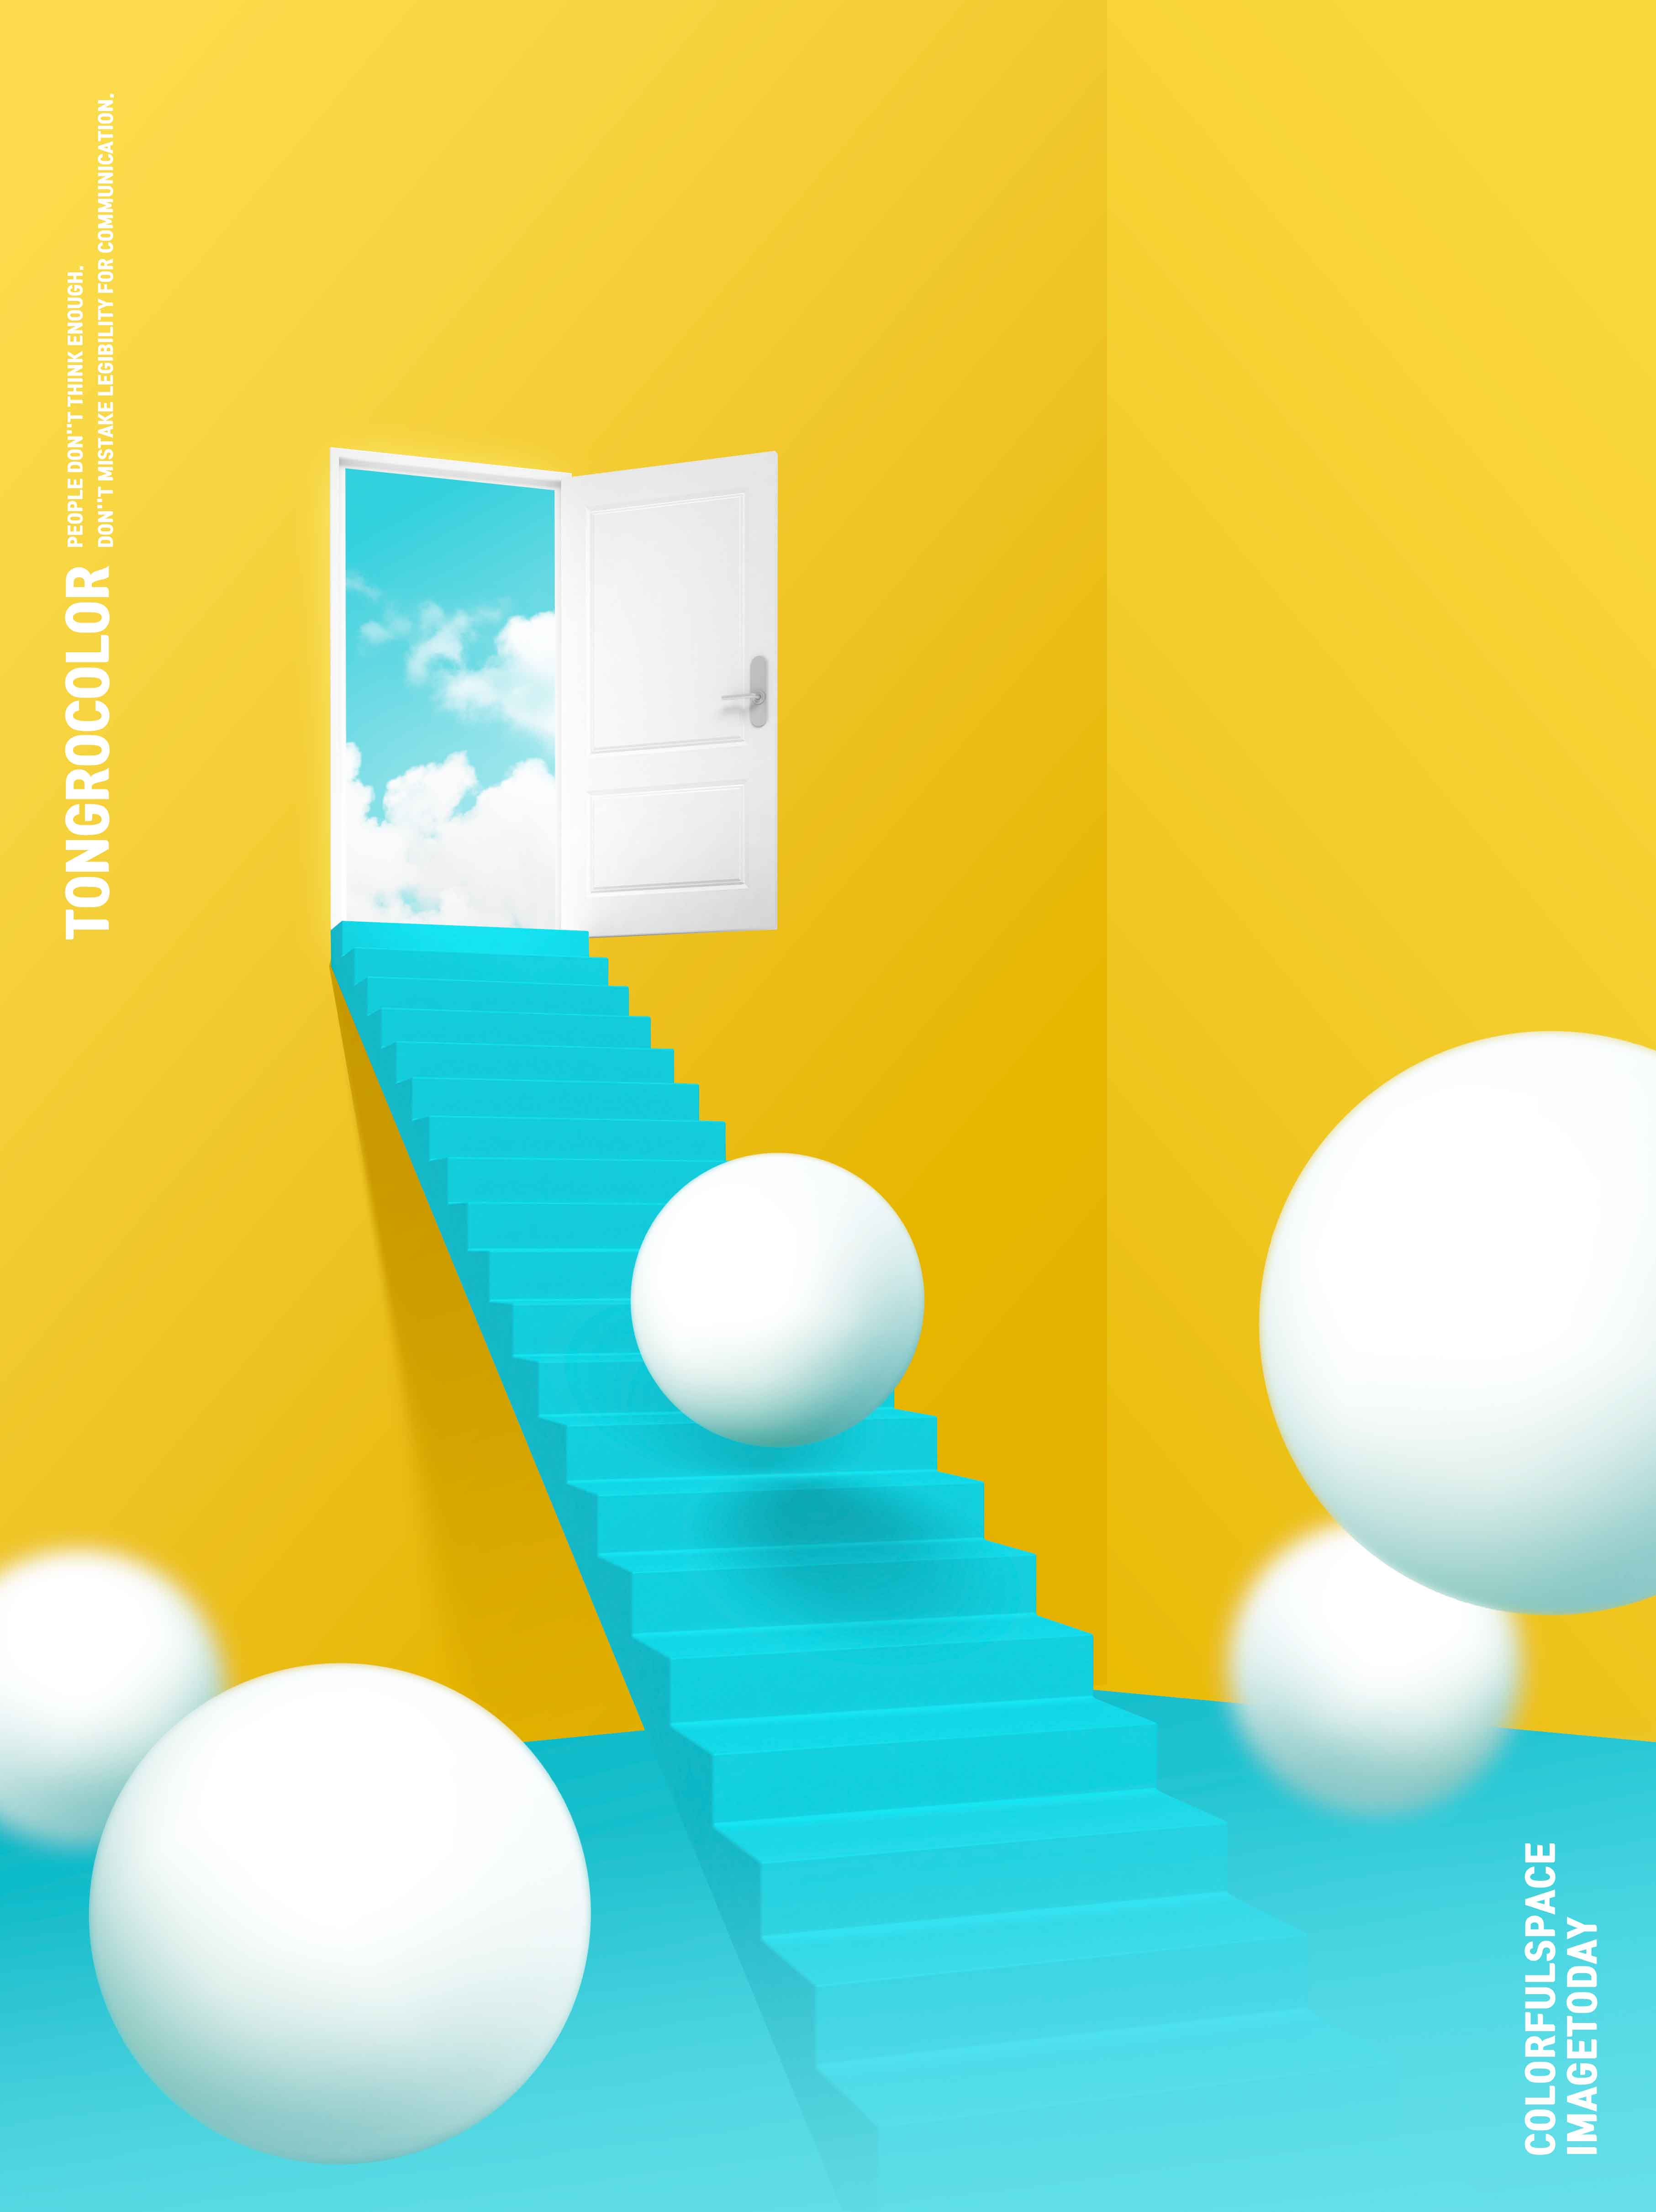 天堂阶梯抽象梦幻空间海报PSD素材大洋岛精选psd素材插图